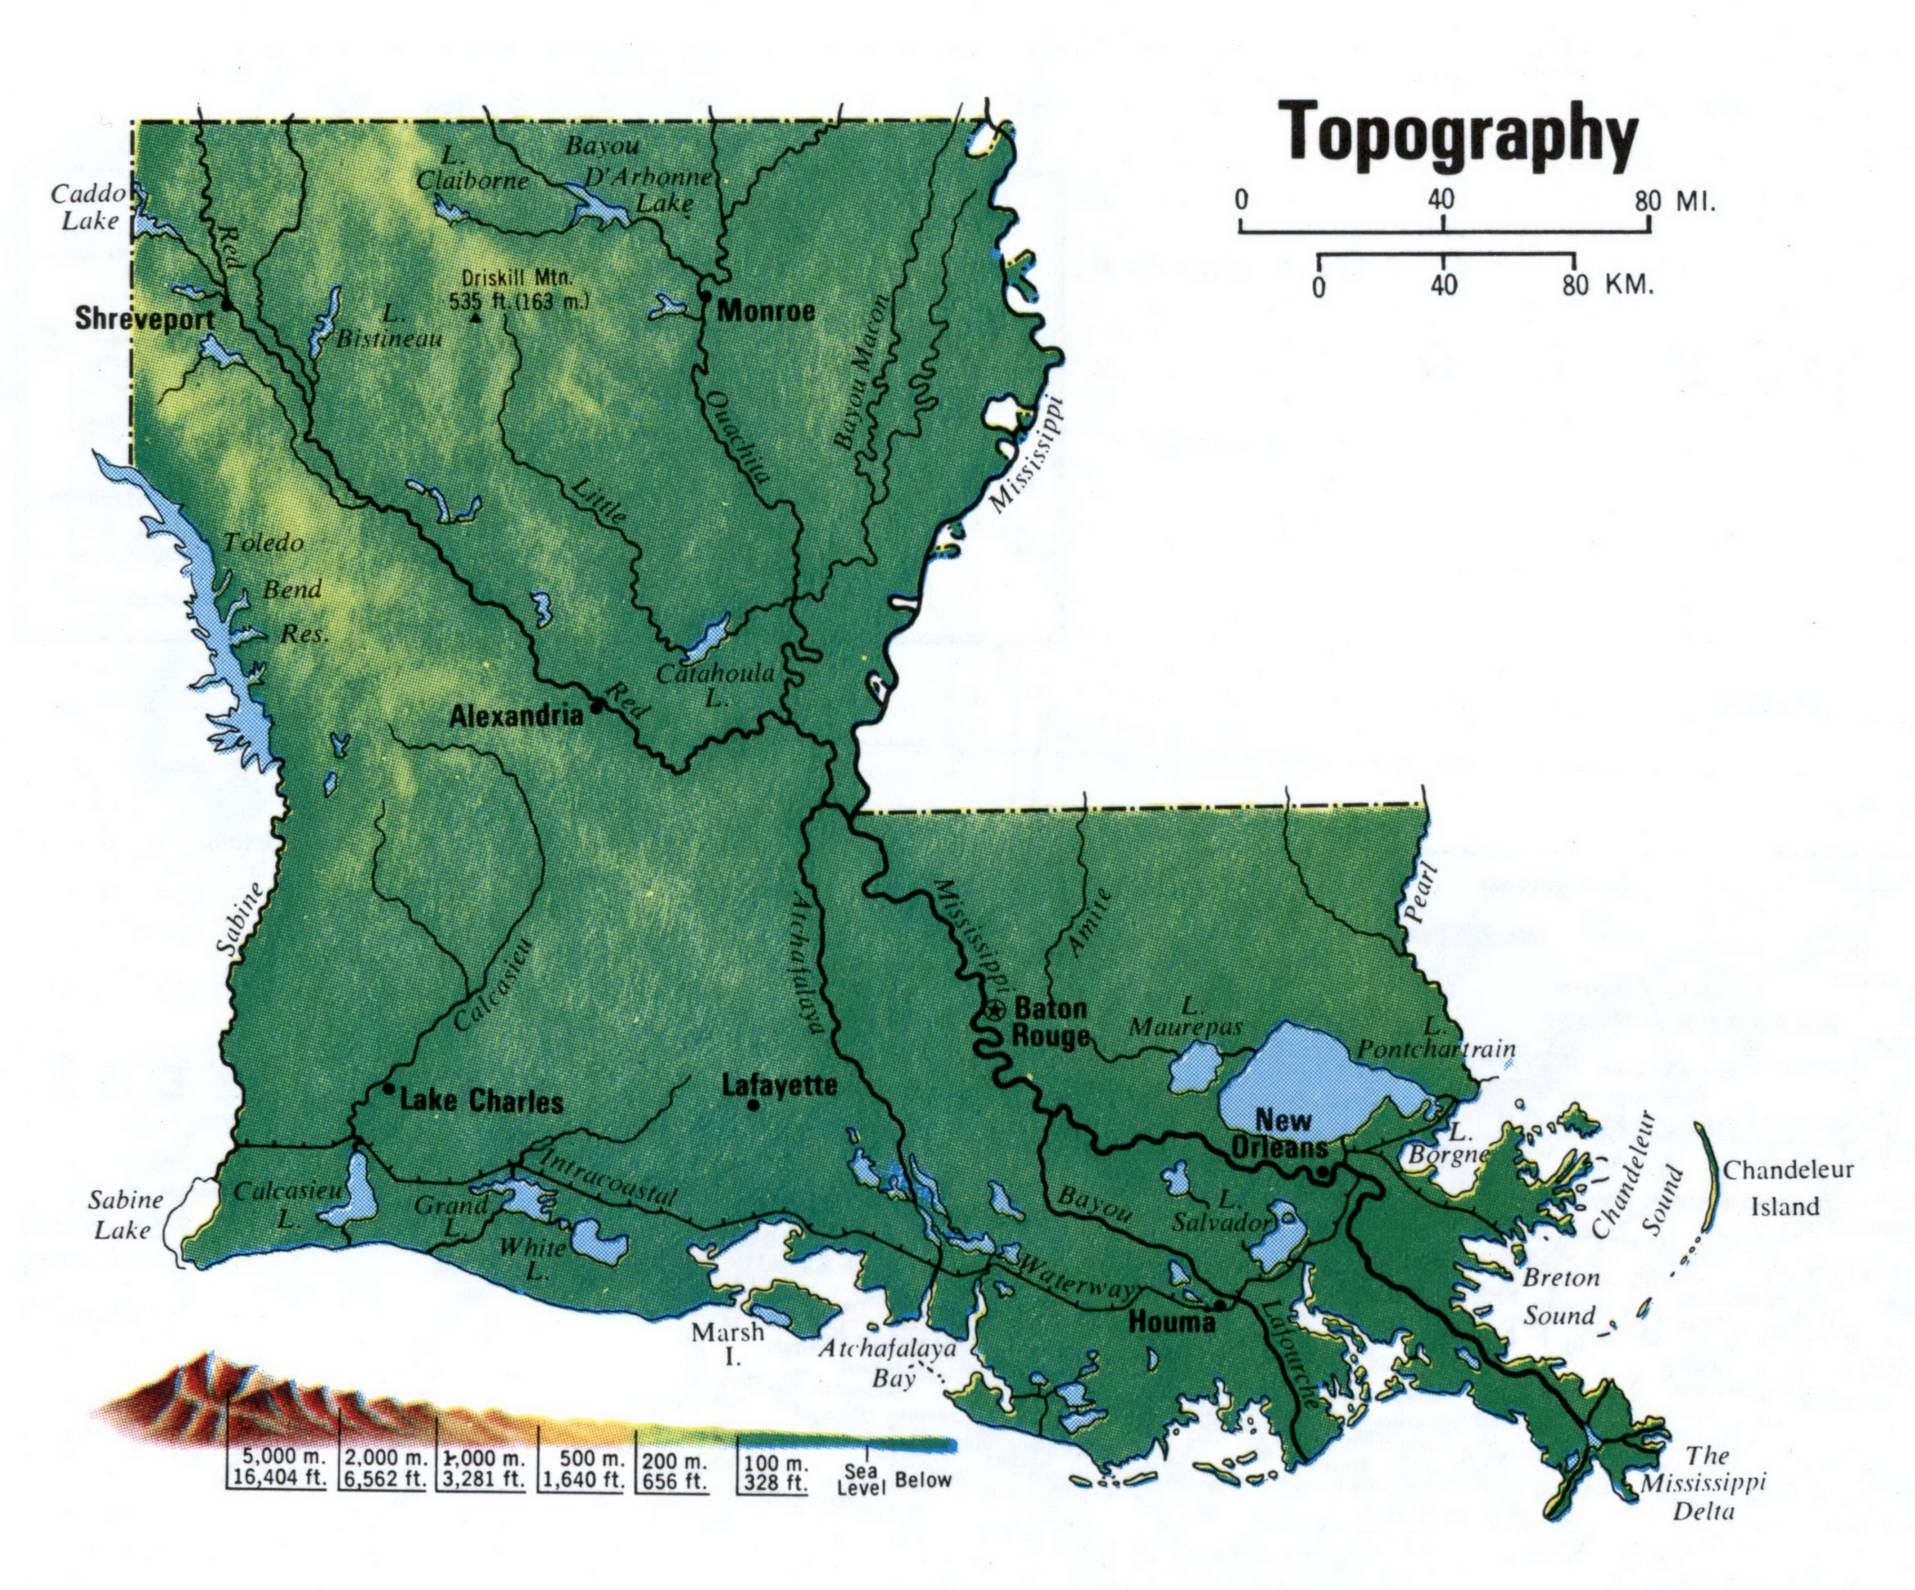 Topography map of Louisiana